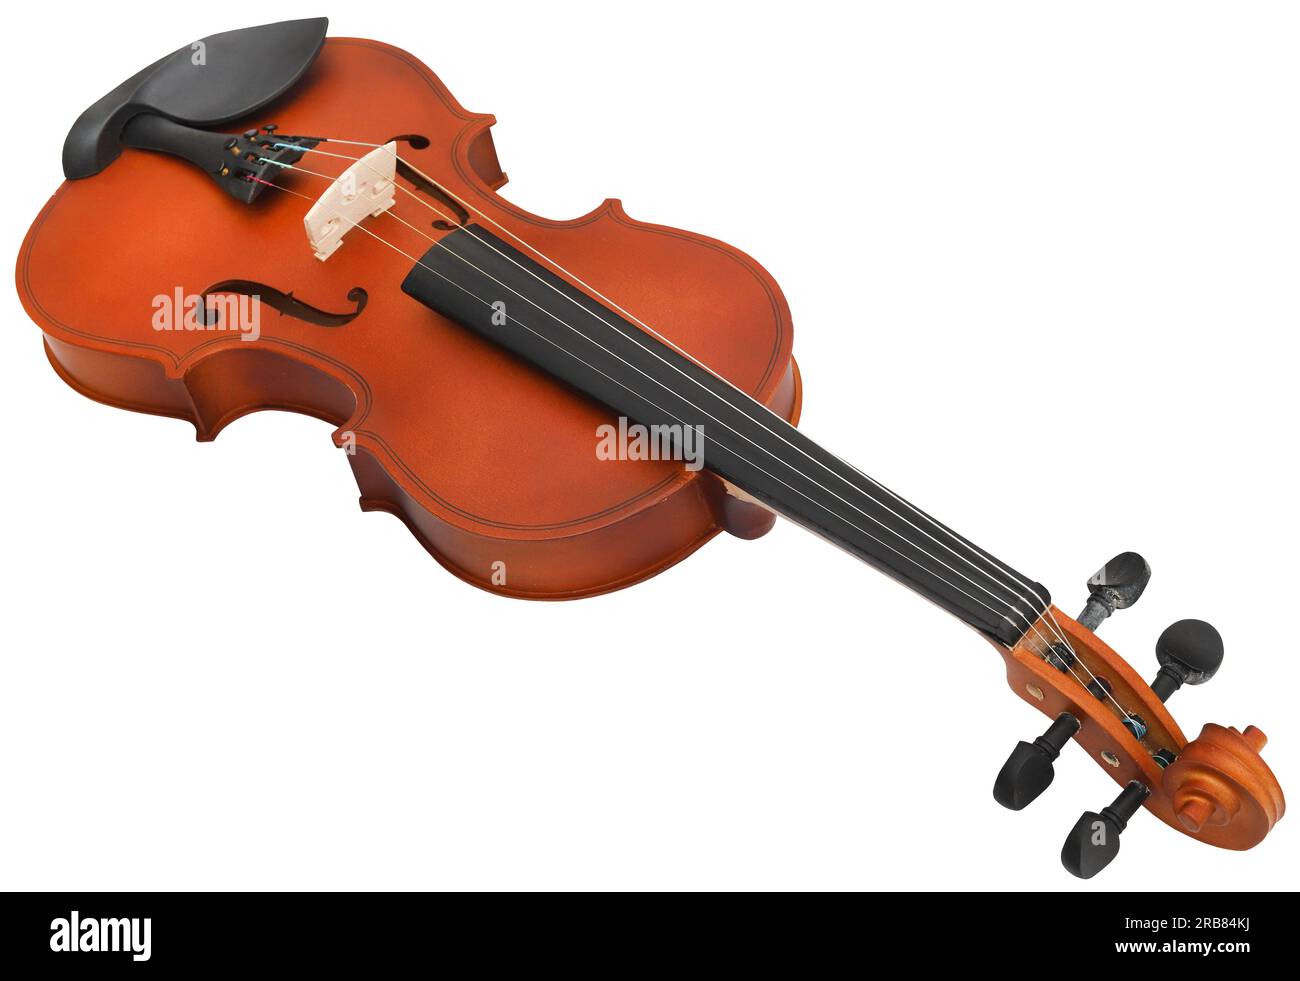 Instrument de musique violon en bois isolé Banque D'Images